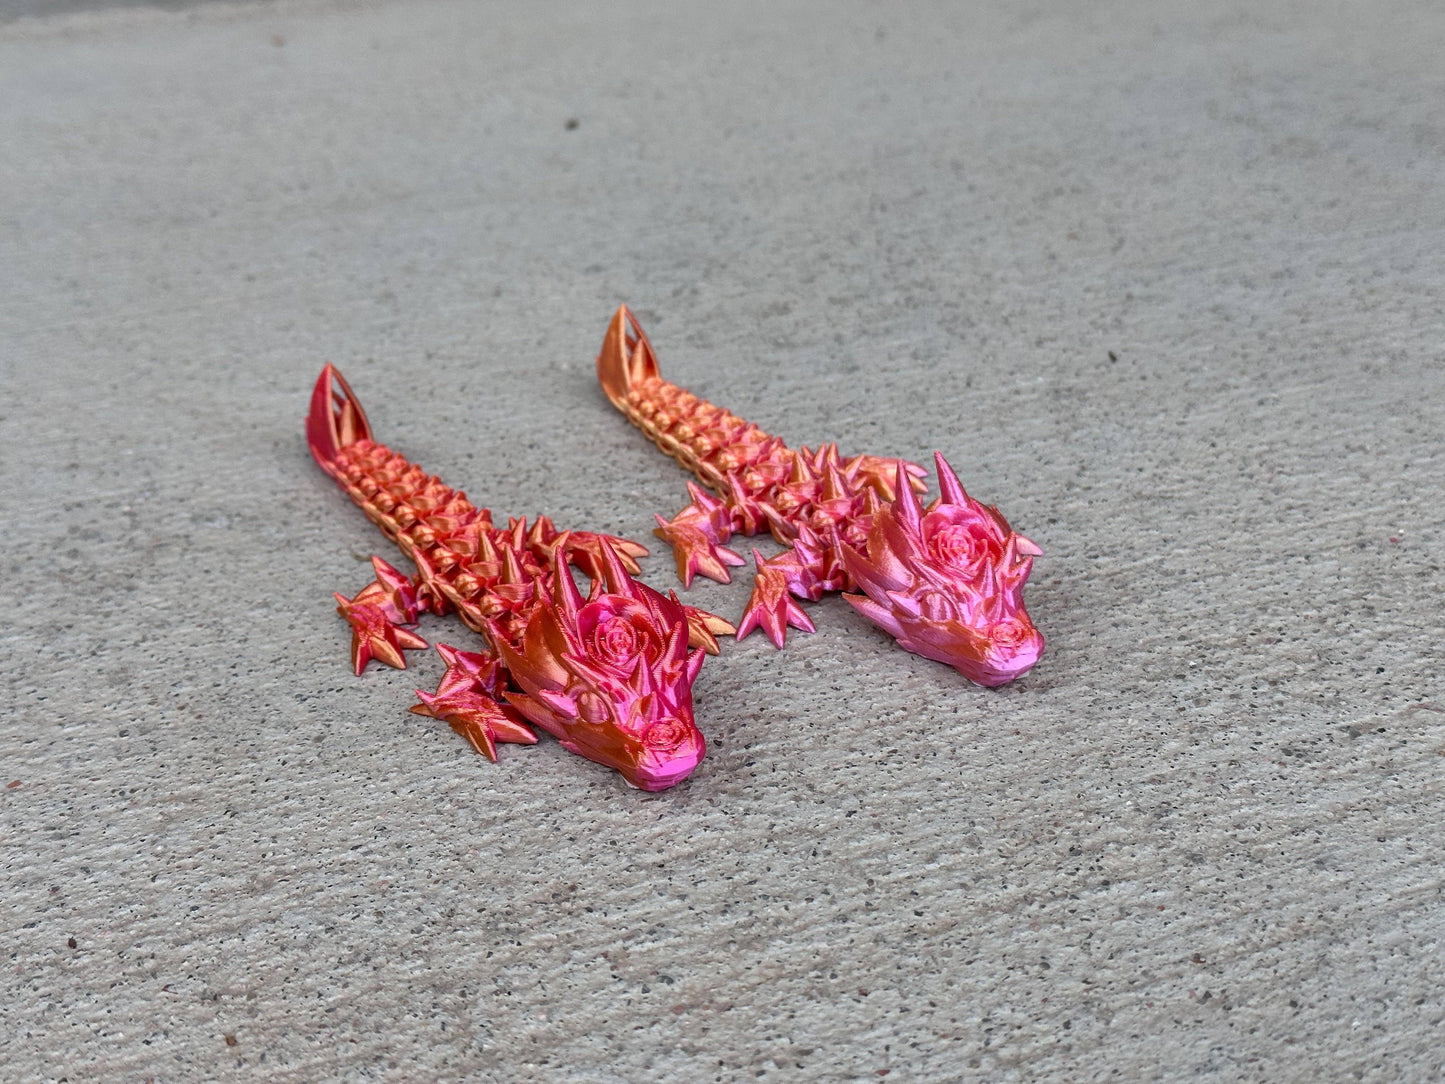 3D Printed Baby Rose Dragon